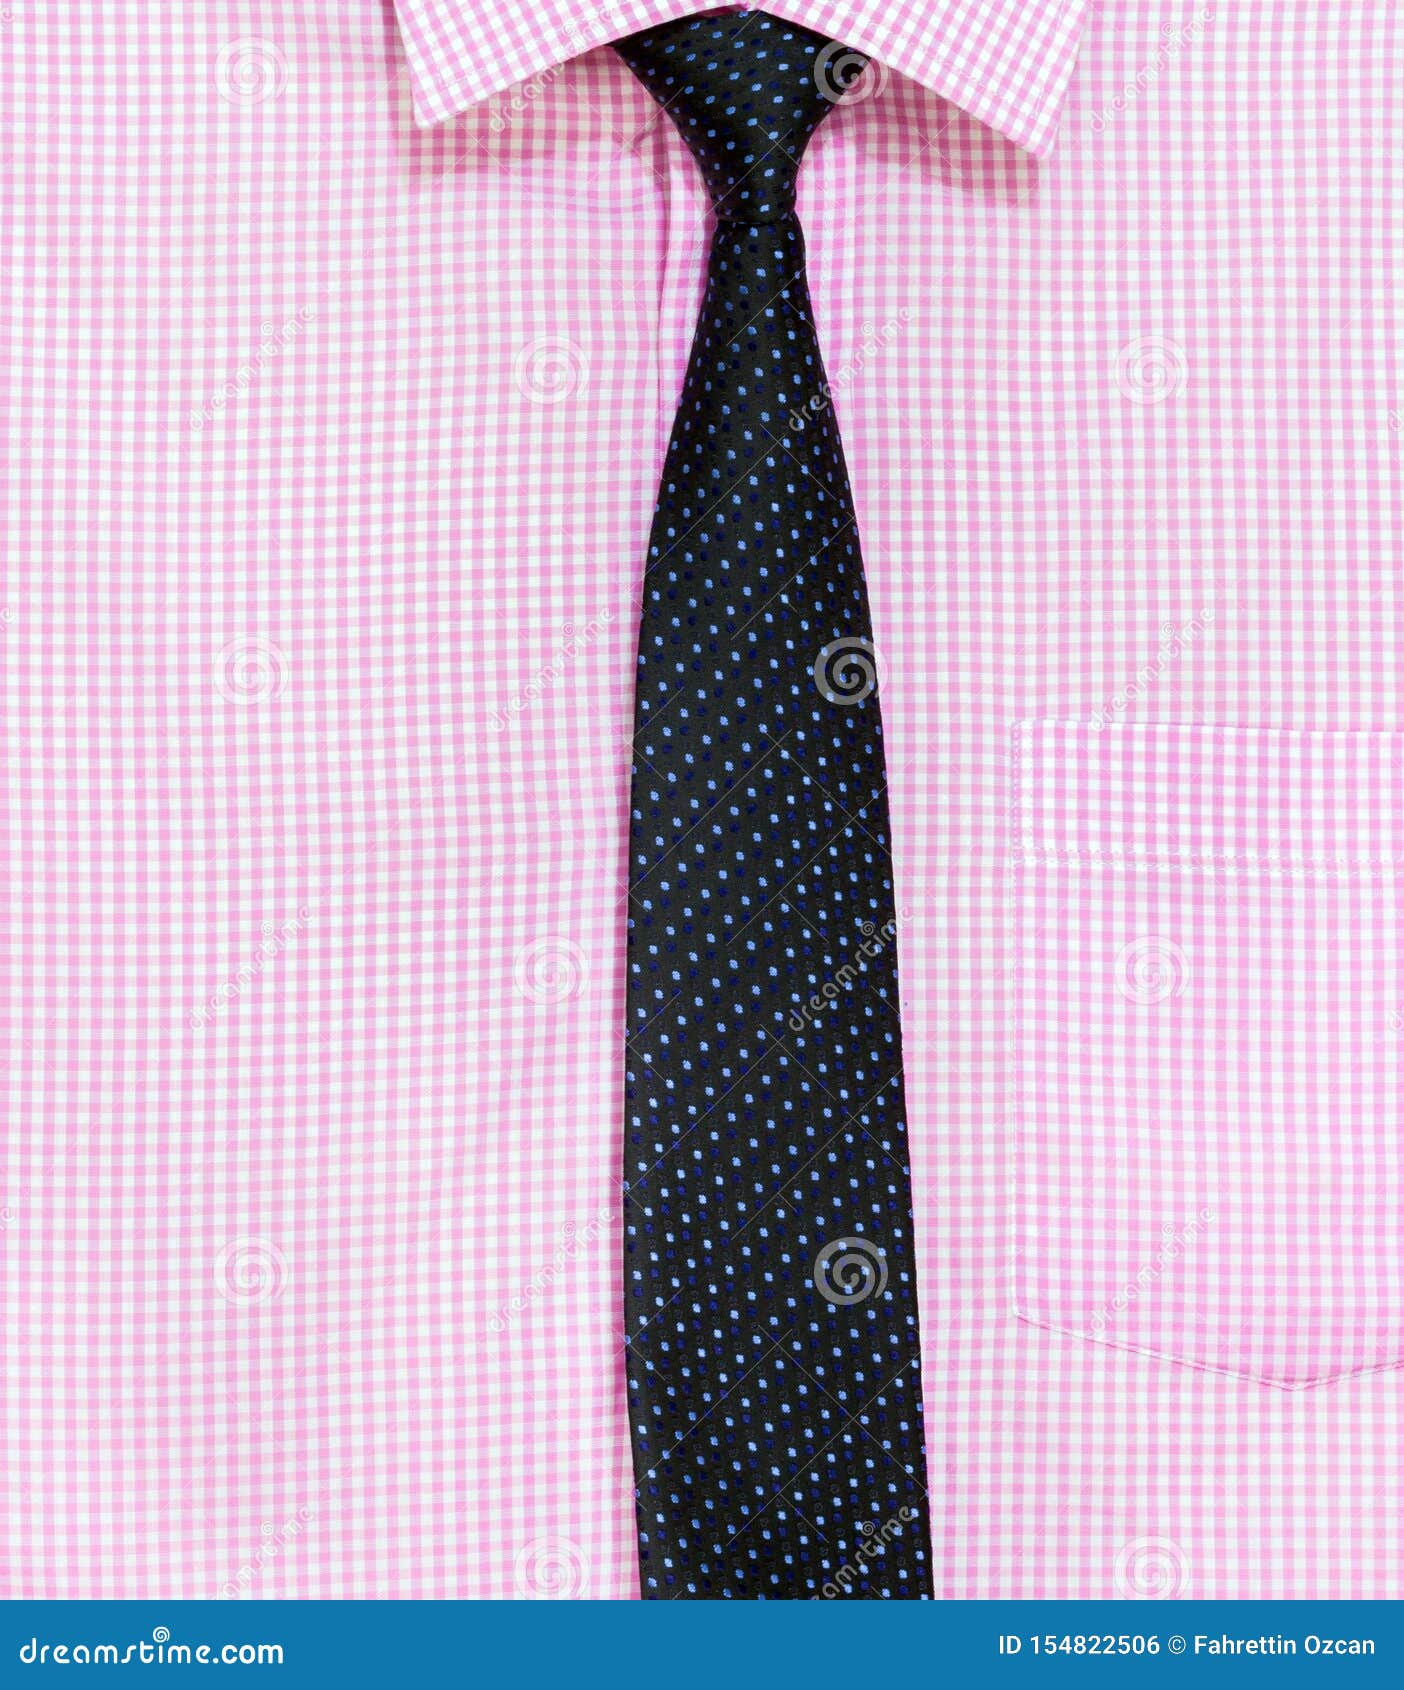 pink checkered shirt mens